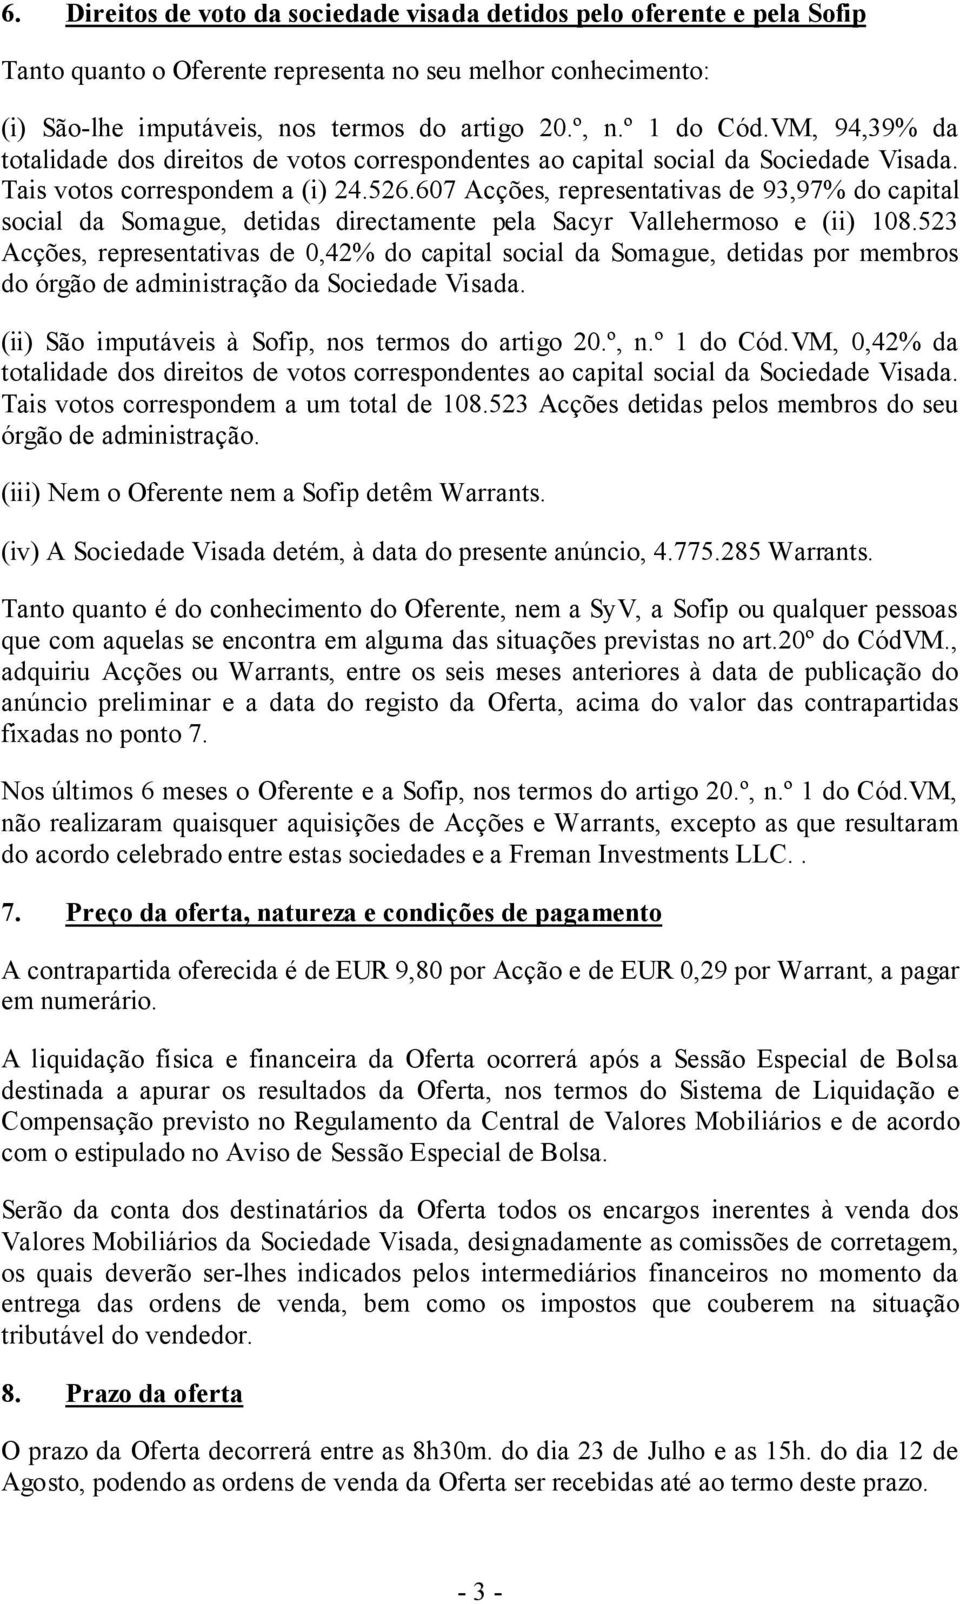 607 Acções, representativas de 93,97% do capital social da Somague, detidas directamente pela Sacyr Vallehermoso e (ii) 108.